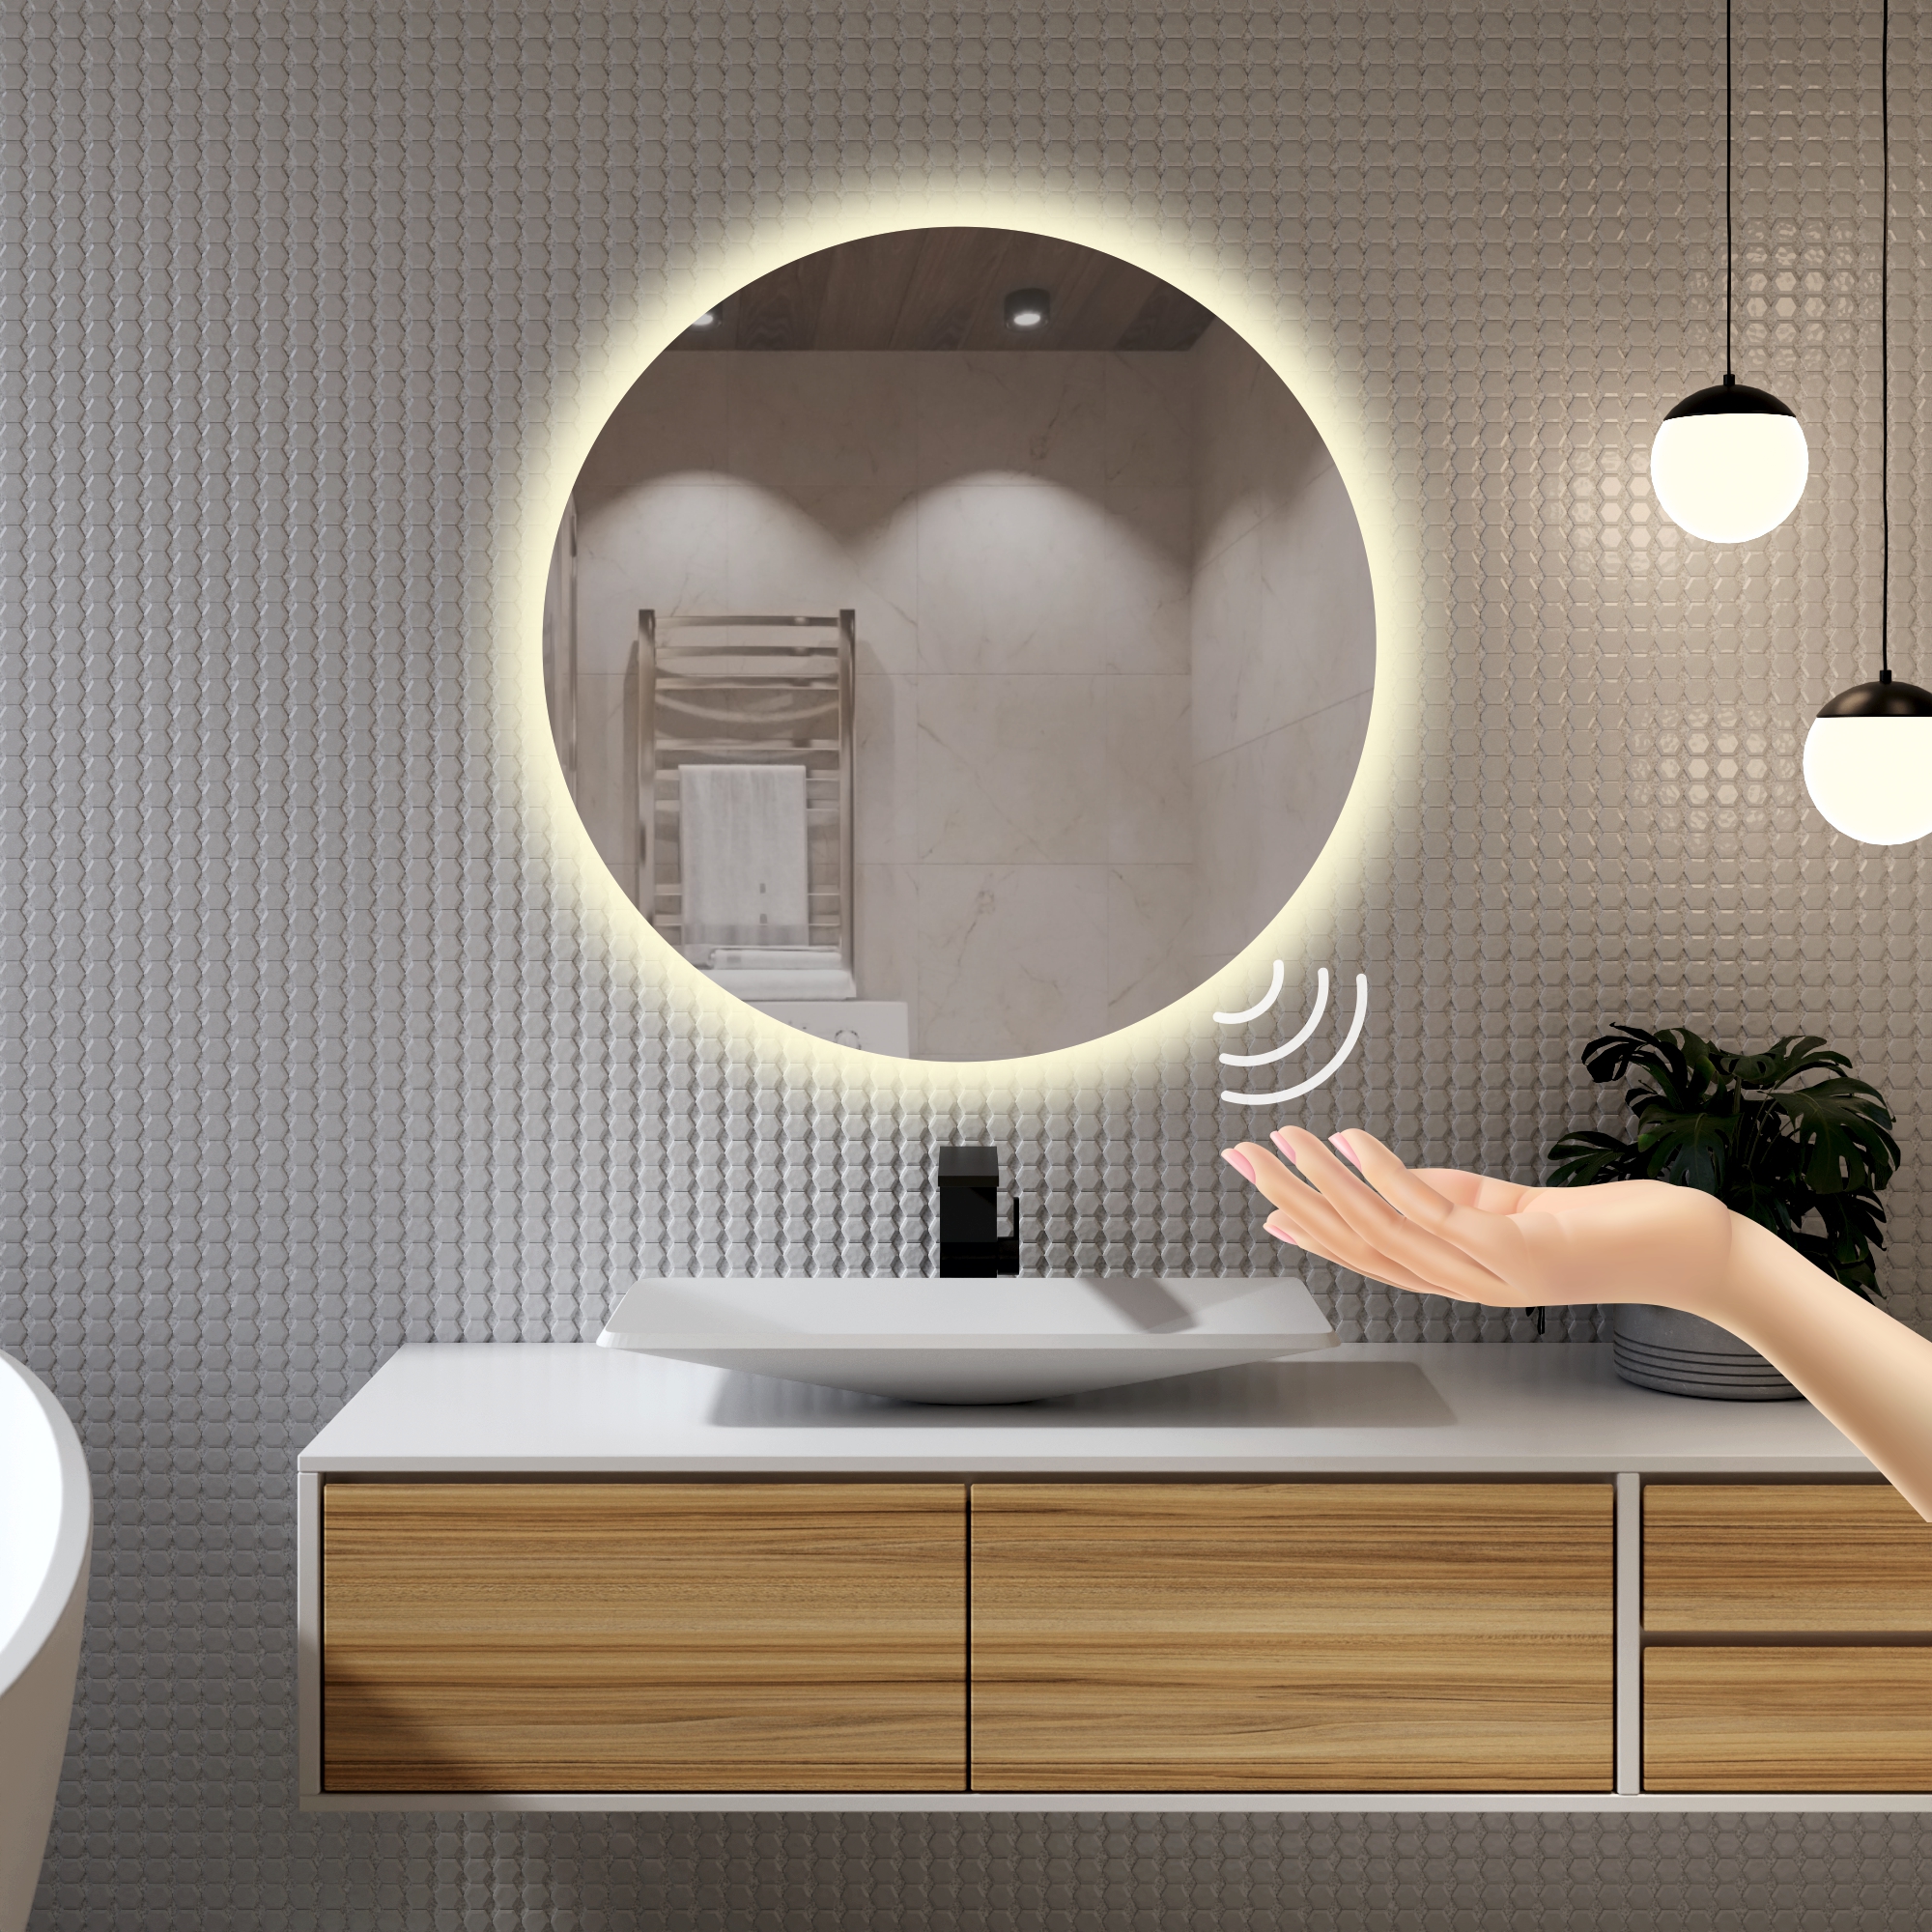 зеркало с подсветкой круглое 70см посдветка дневная 4200к Зеркало для ванной Alfa Mirrors с дневной подсветкой 4200К круглое 70см, арт. Na-7Vzd